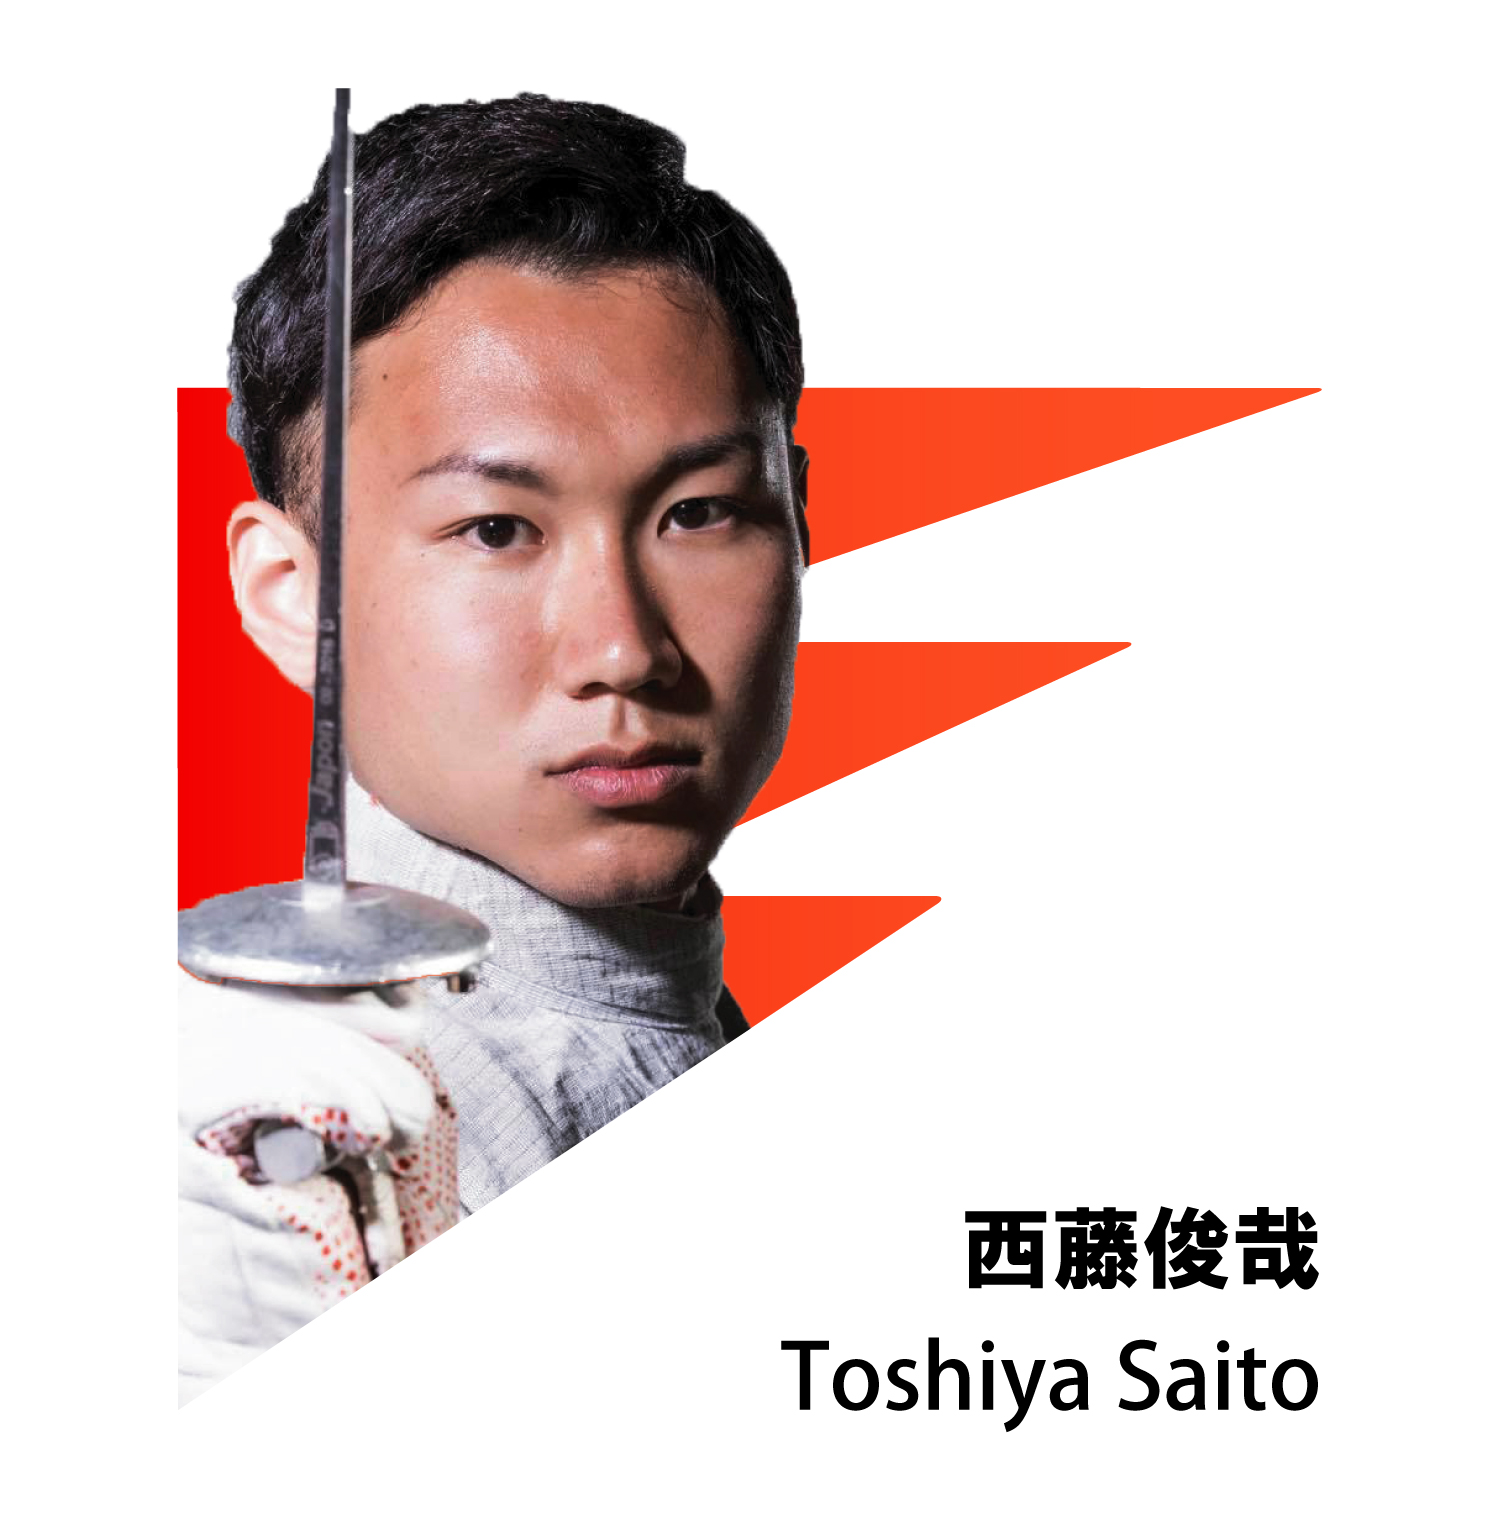 TOSHIYA SAITO